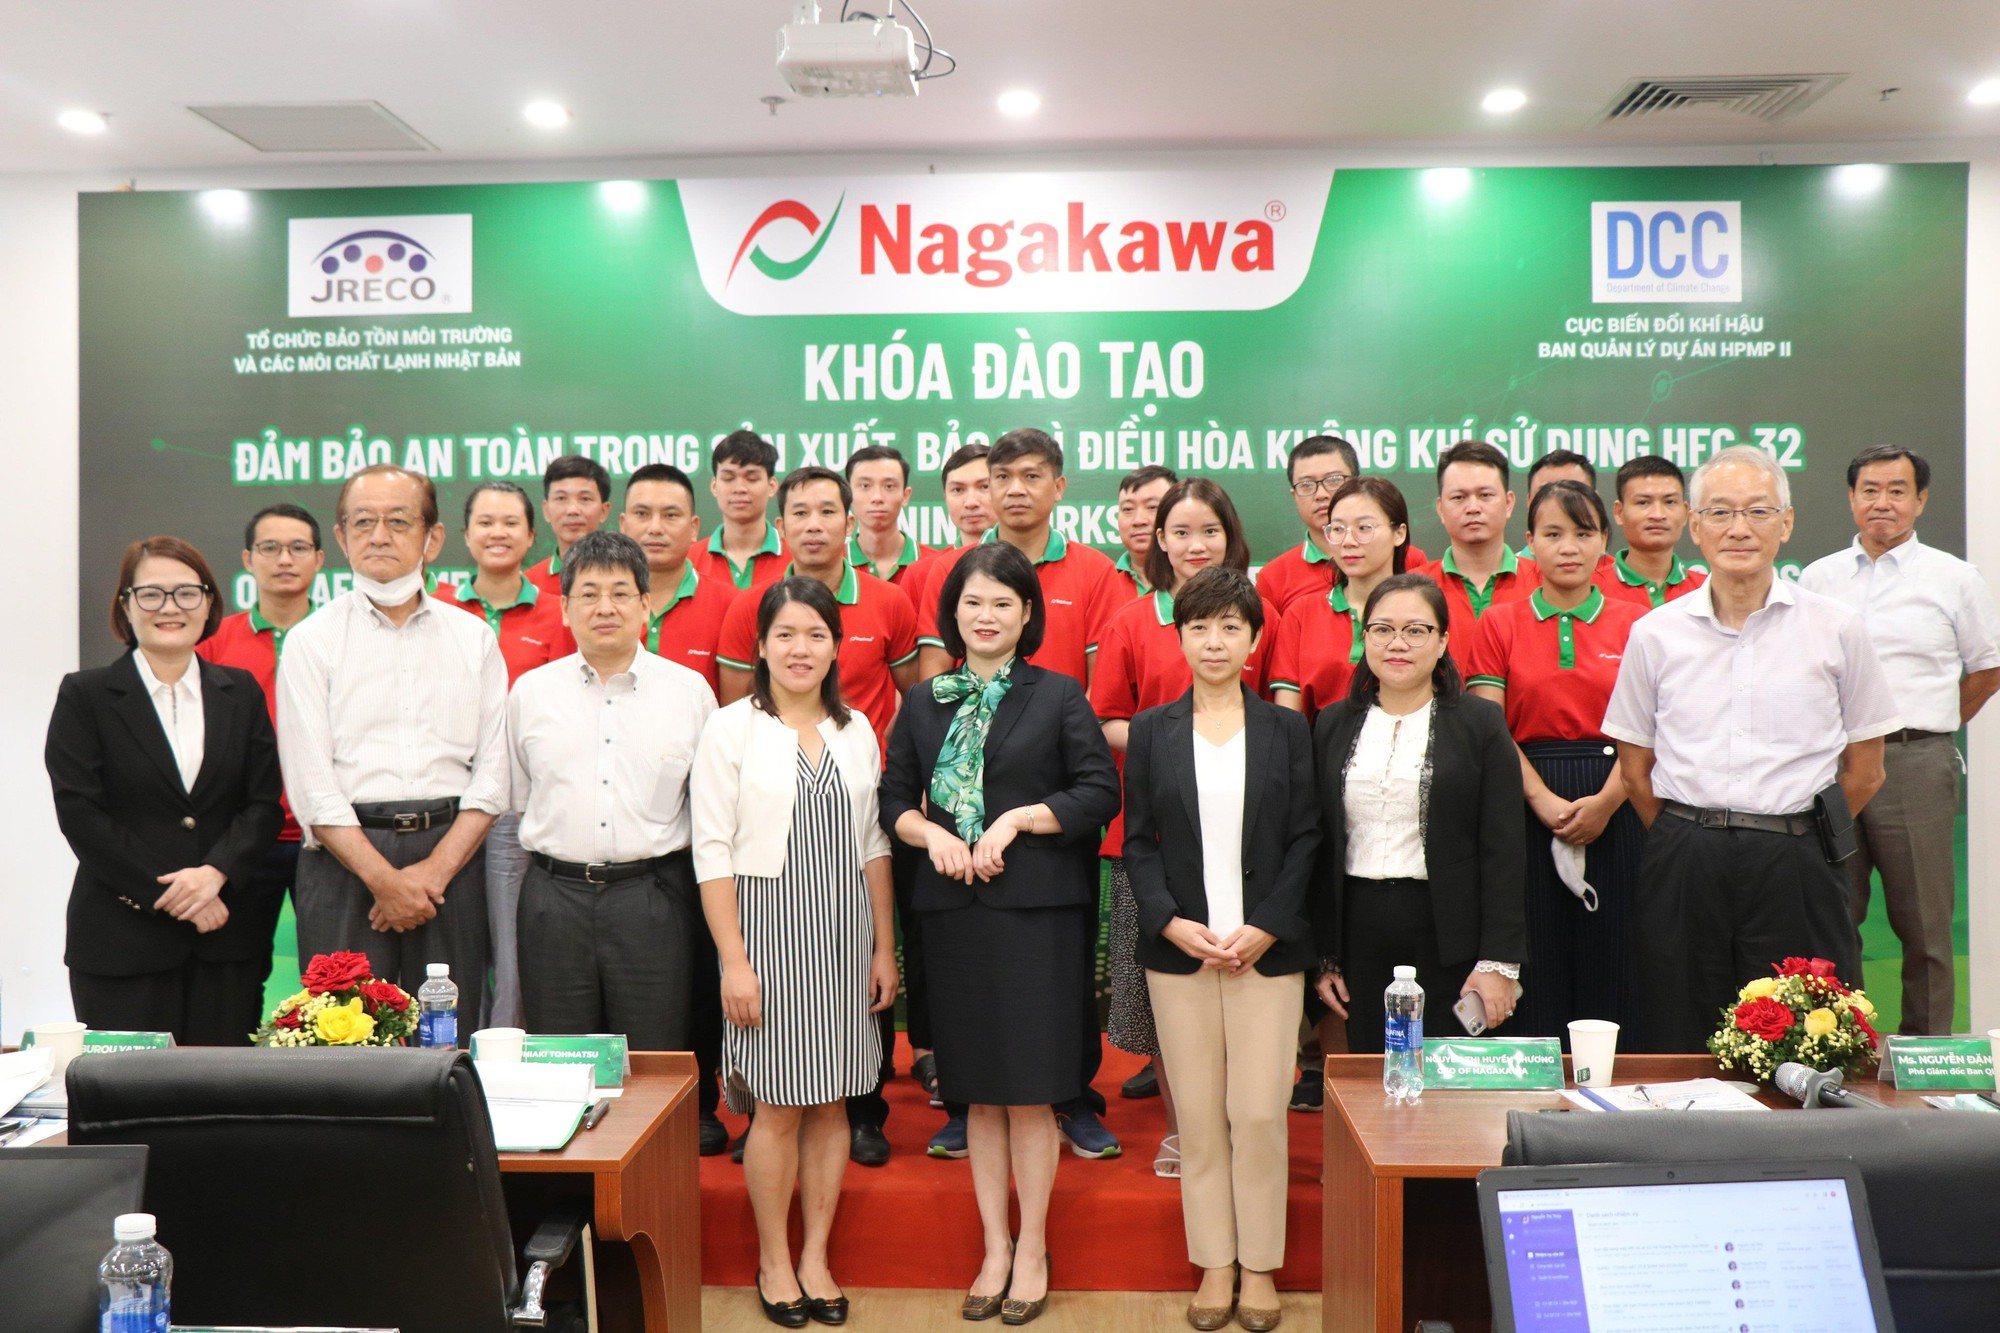 Nagakawa - Doanh nghiệp ngành điện lạnh tiên phong tiết kiệm năng lượng quốc gia - Ảnh 4.